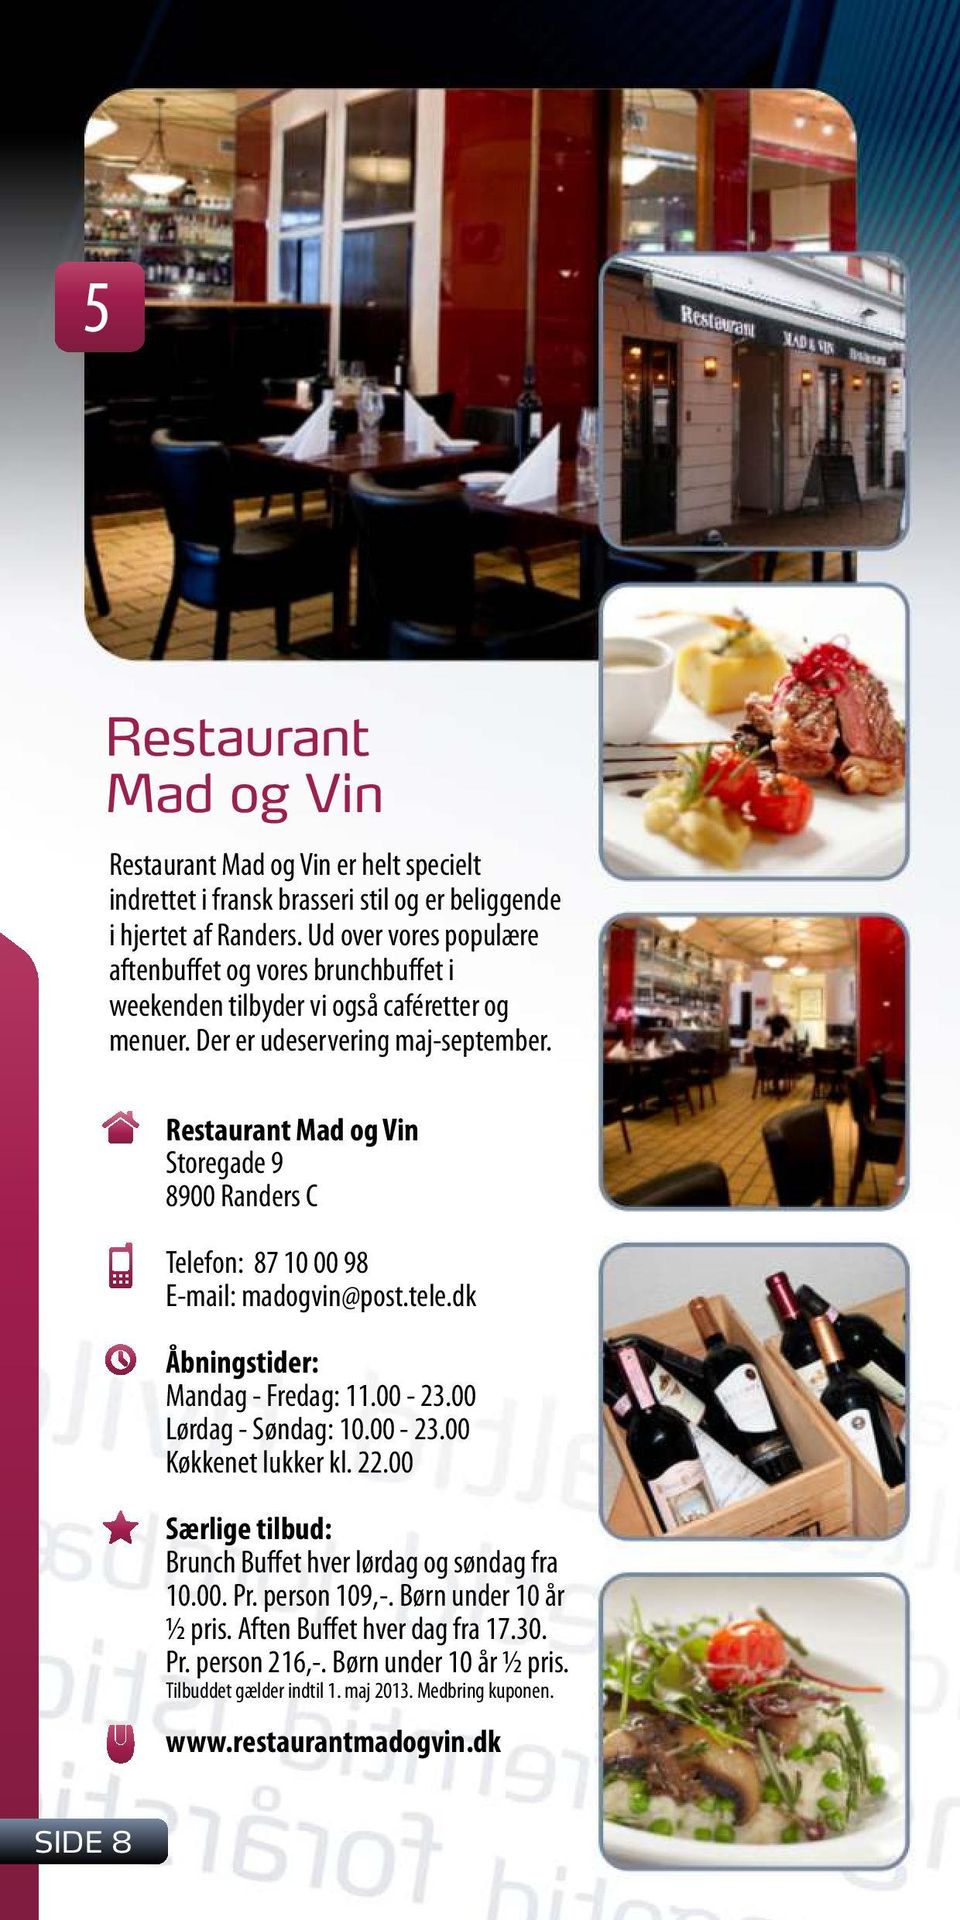 Restaurant Mad og Vin Storegade 9 8900 Randers C Telefon: 87 10 00 98 E-mail: madogvin@post.tele.dk Mandag - Fredag: 11.00-23.00 Lørdag - Søndag: 10.00-23.00 Køkkenet lukker kl.